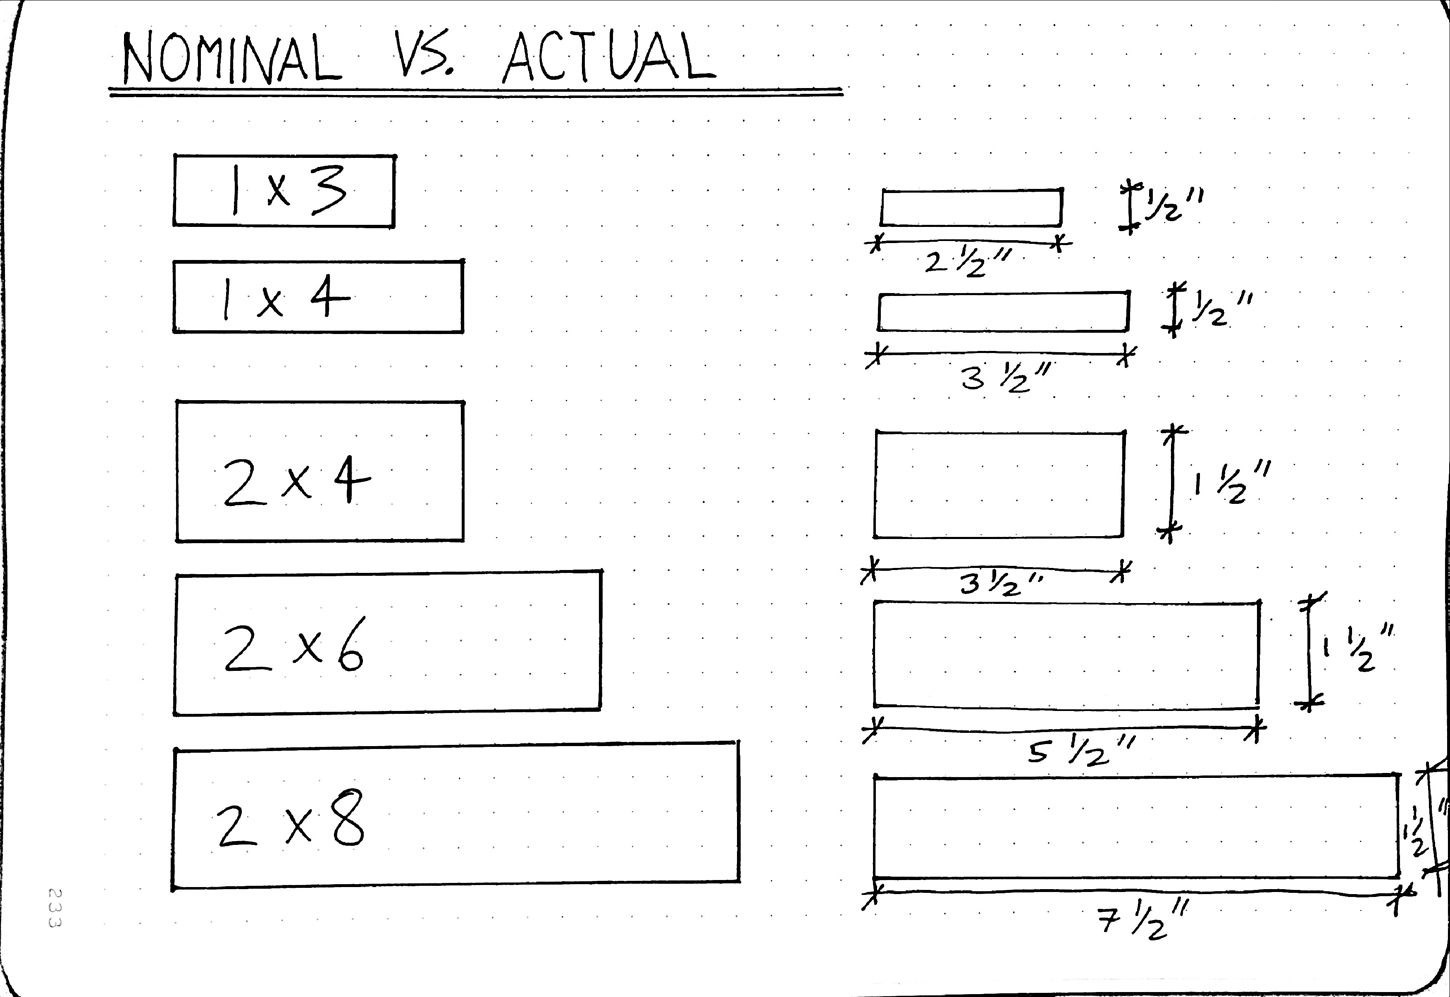 nominal vs. actual, dimensional lumber